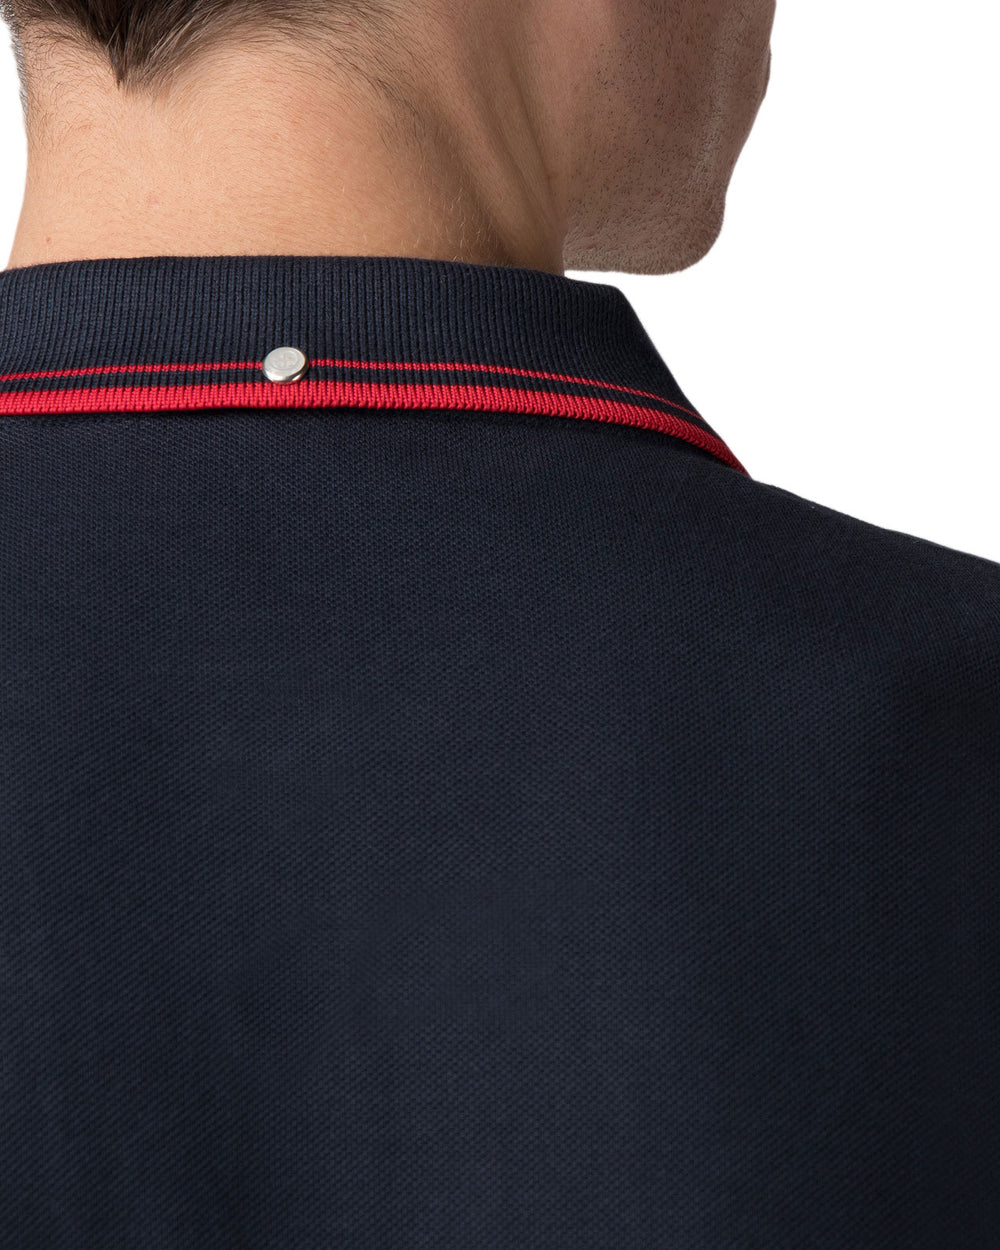 Romford Polo Shirt - Staples Navy